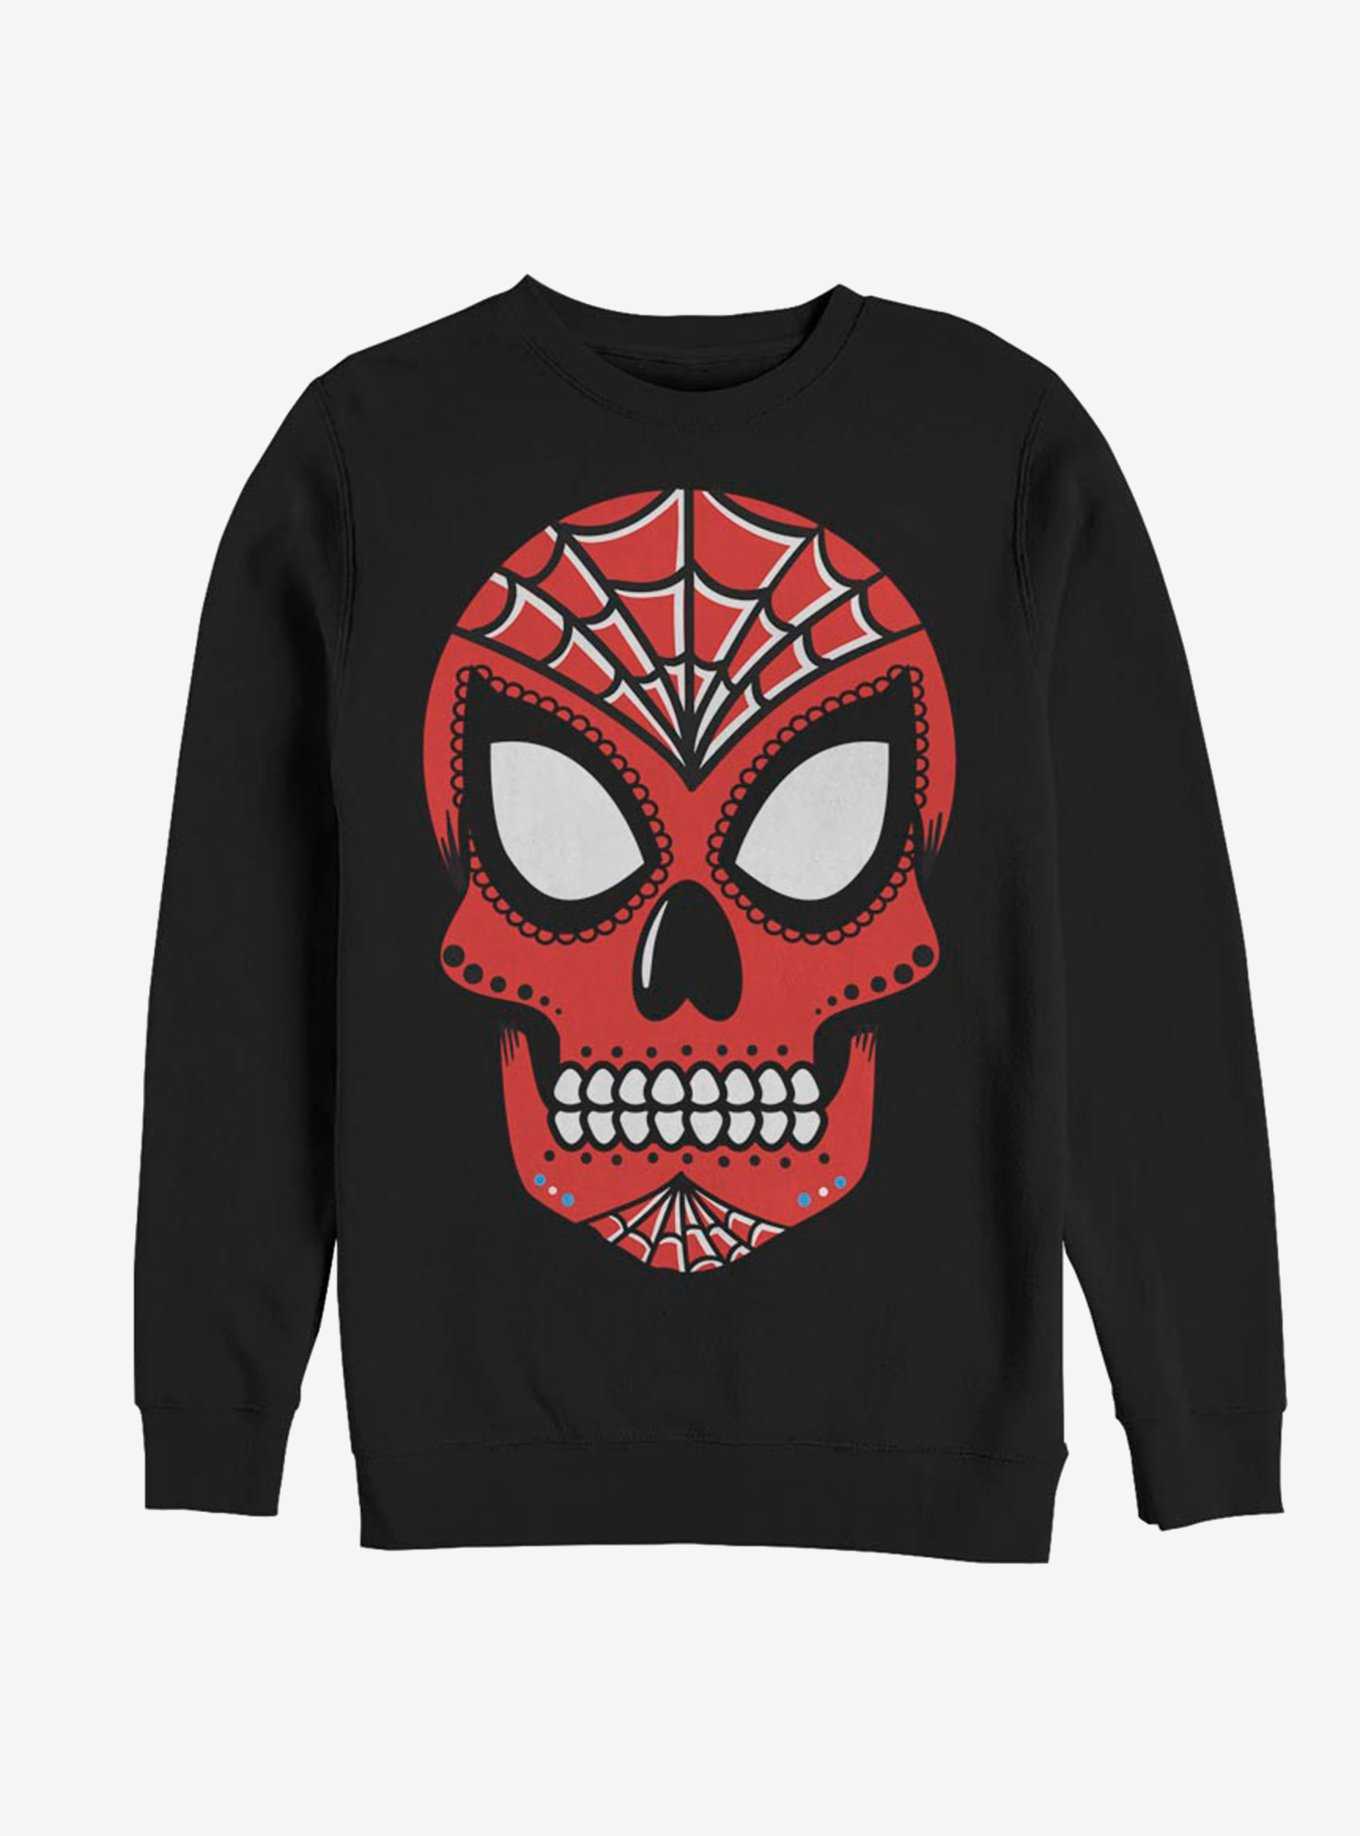 Marvel Spider-Man Sugar Skull Sweatshirt, , hi-res